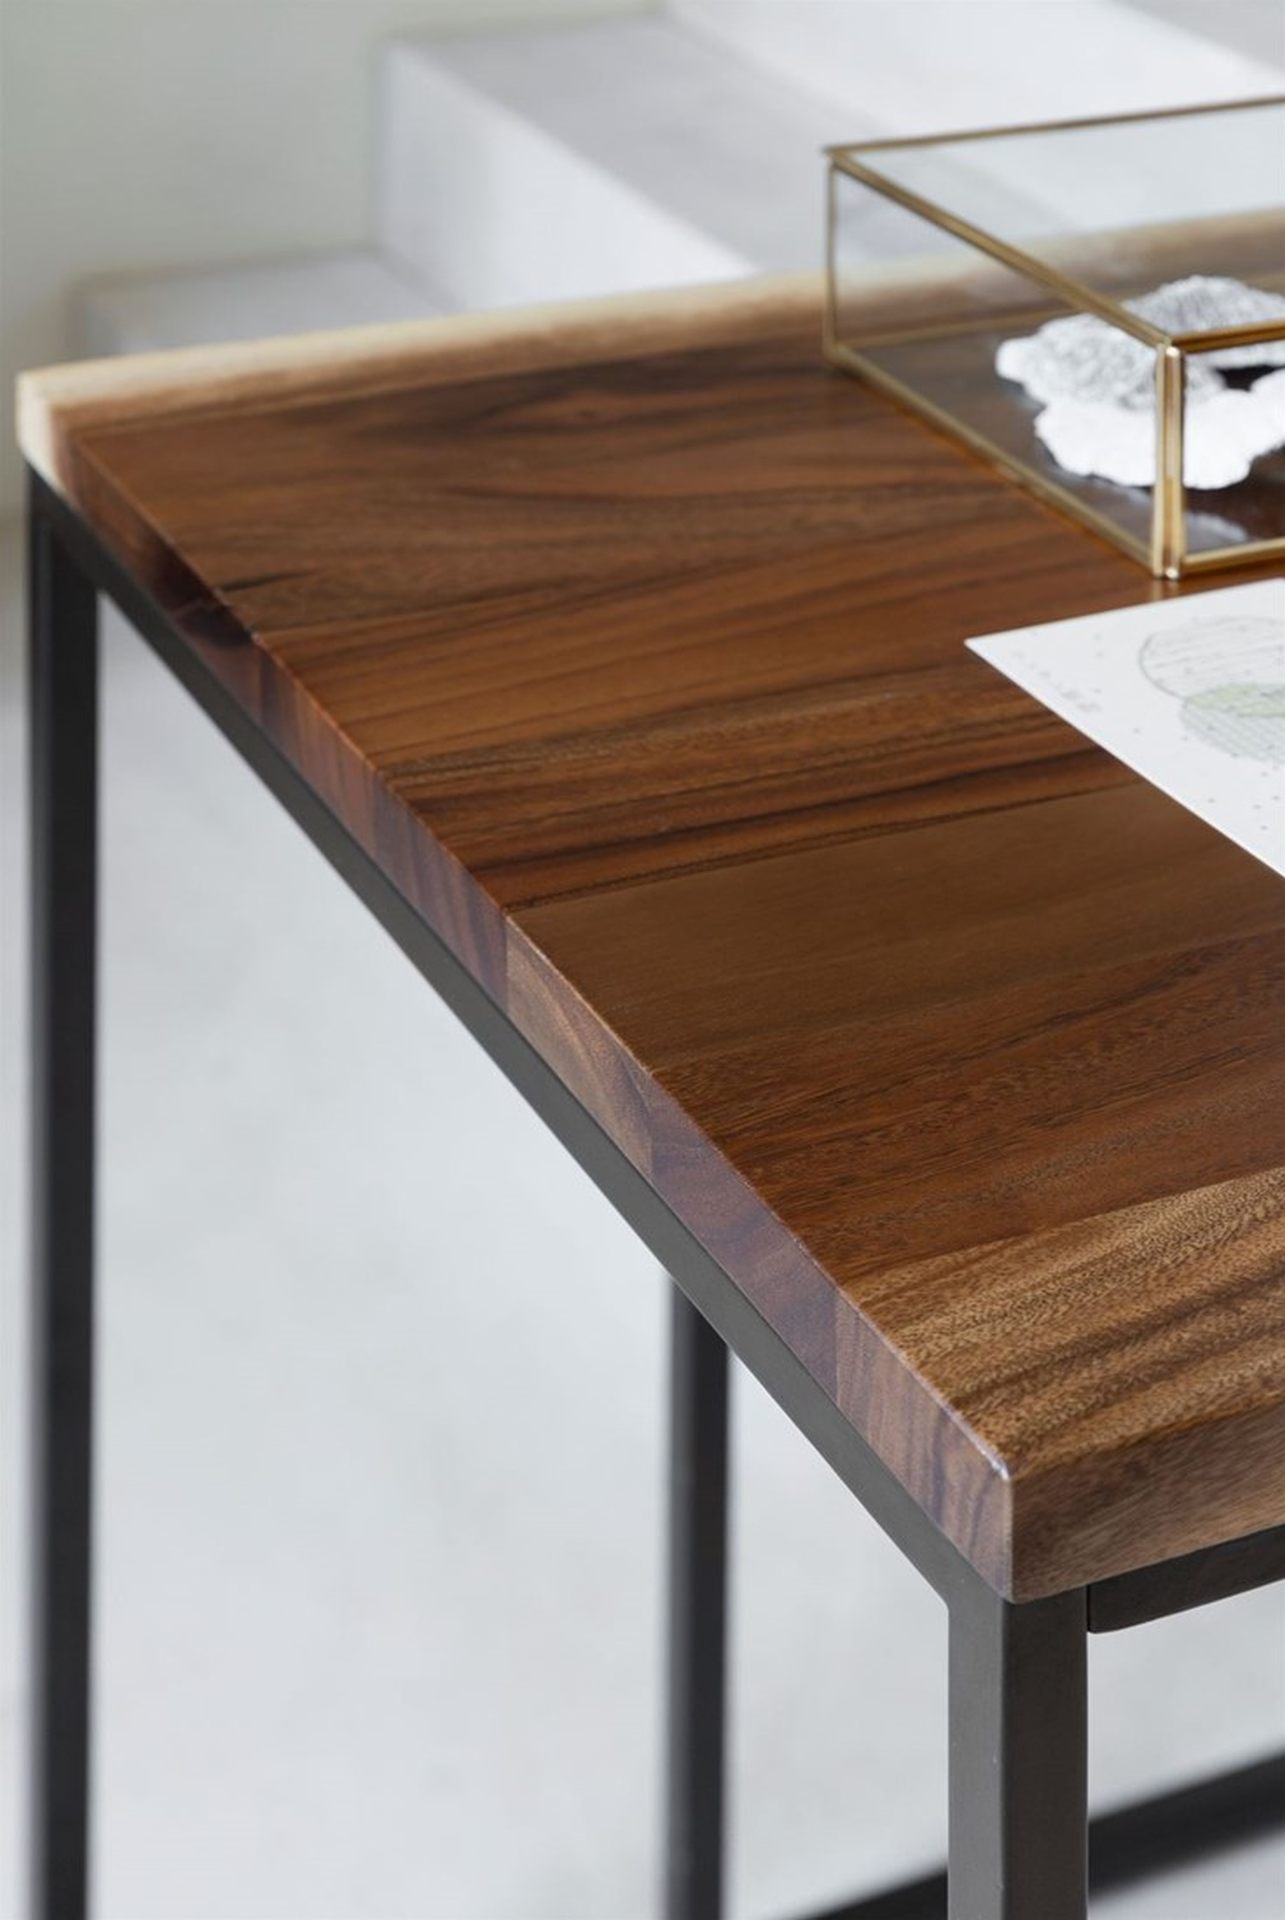 Der Schreibtisch Flare überzeugt mit seinem massivem aber auch industriellem Design. Gefertigt wurde der Tisch aus massivem Suar Holz, welches einen natürlichen Farbton besitzt. Der Tisch besitzt eine Länge von 140 cm.